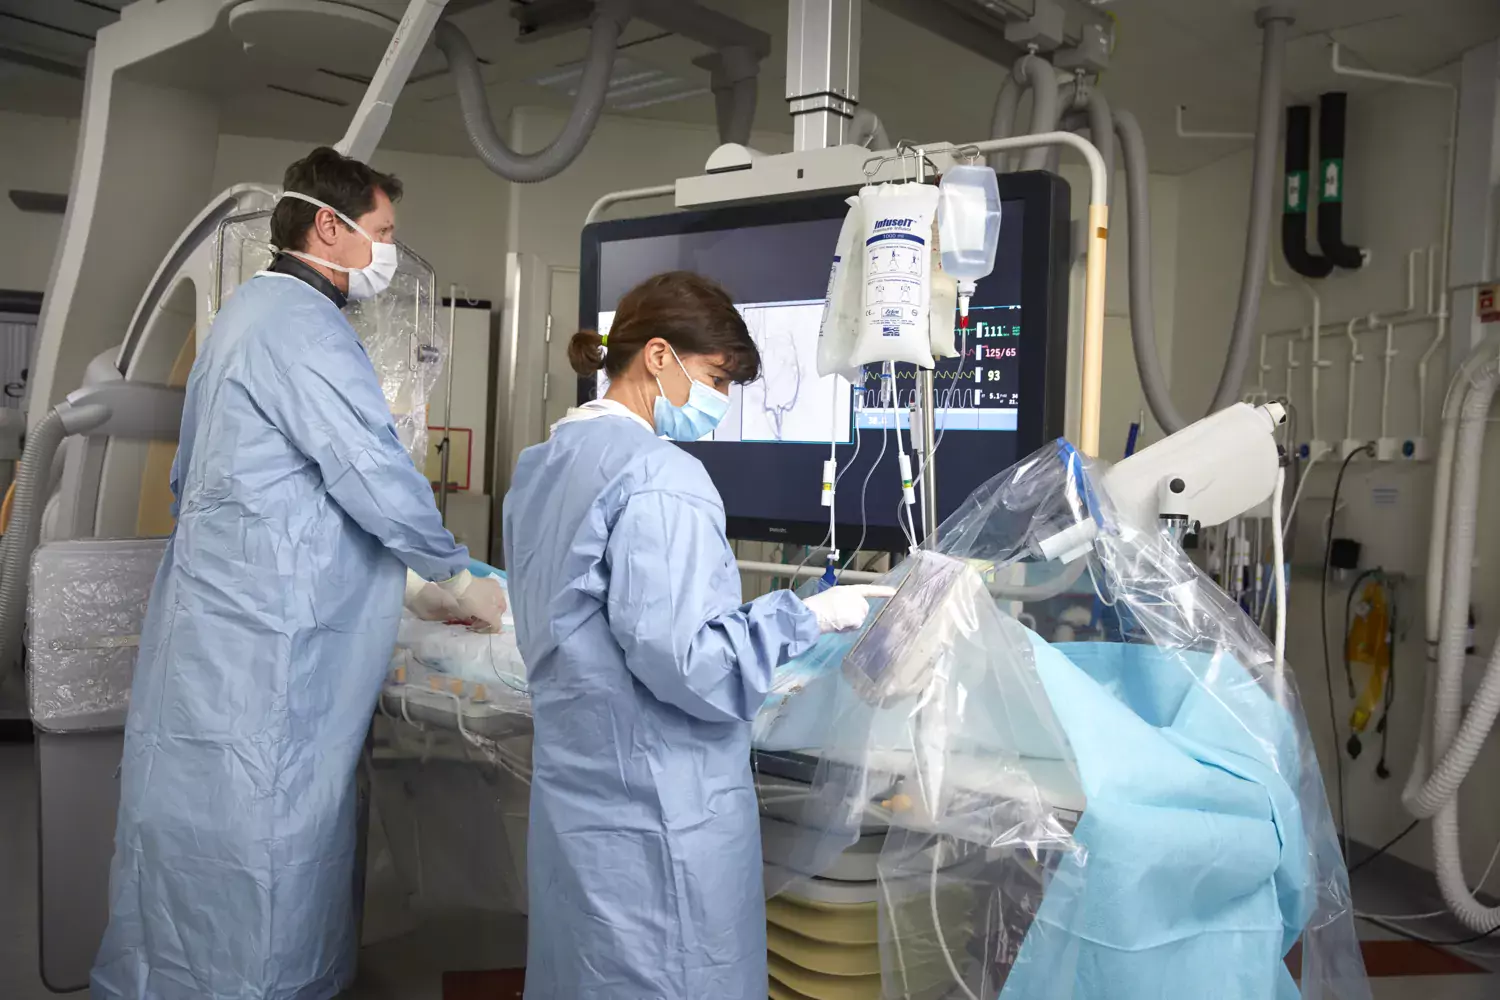 Två personer i operationskläder med dropp, skärm och annan medicinsk utrustning. De arbetar och har ryggen mot kameran.